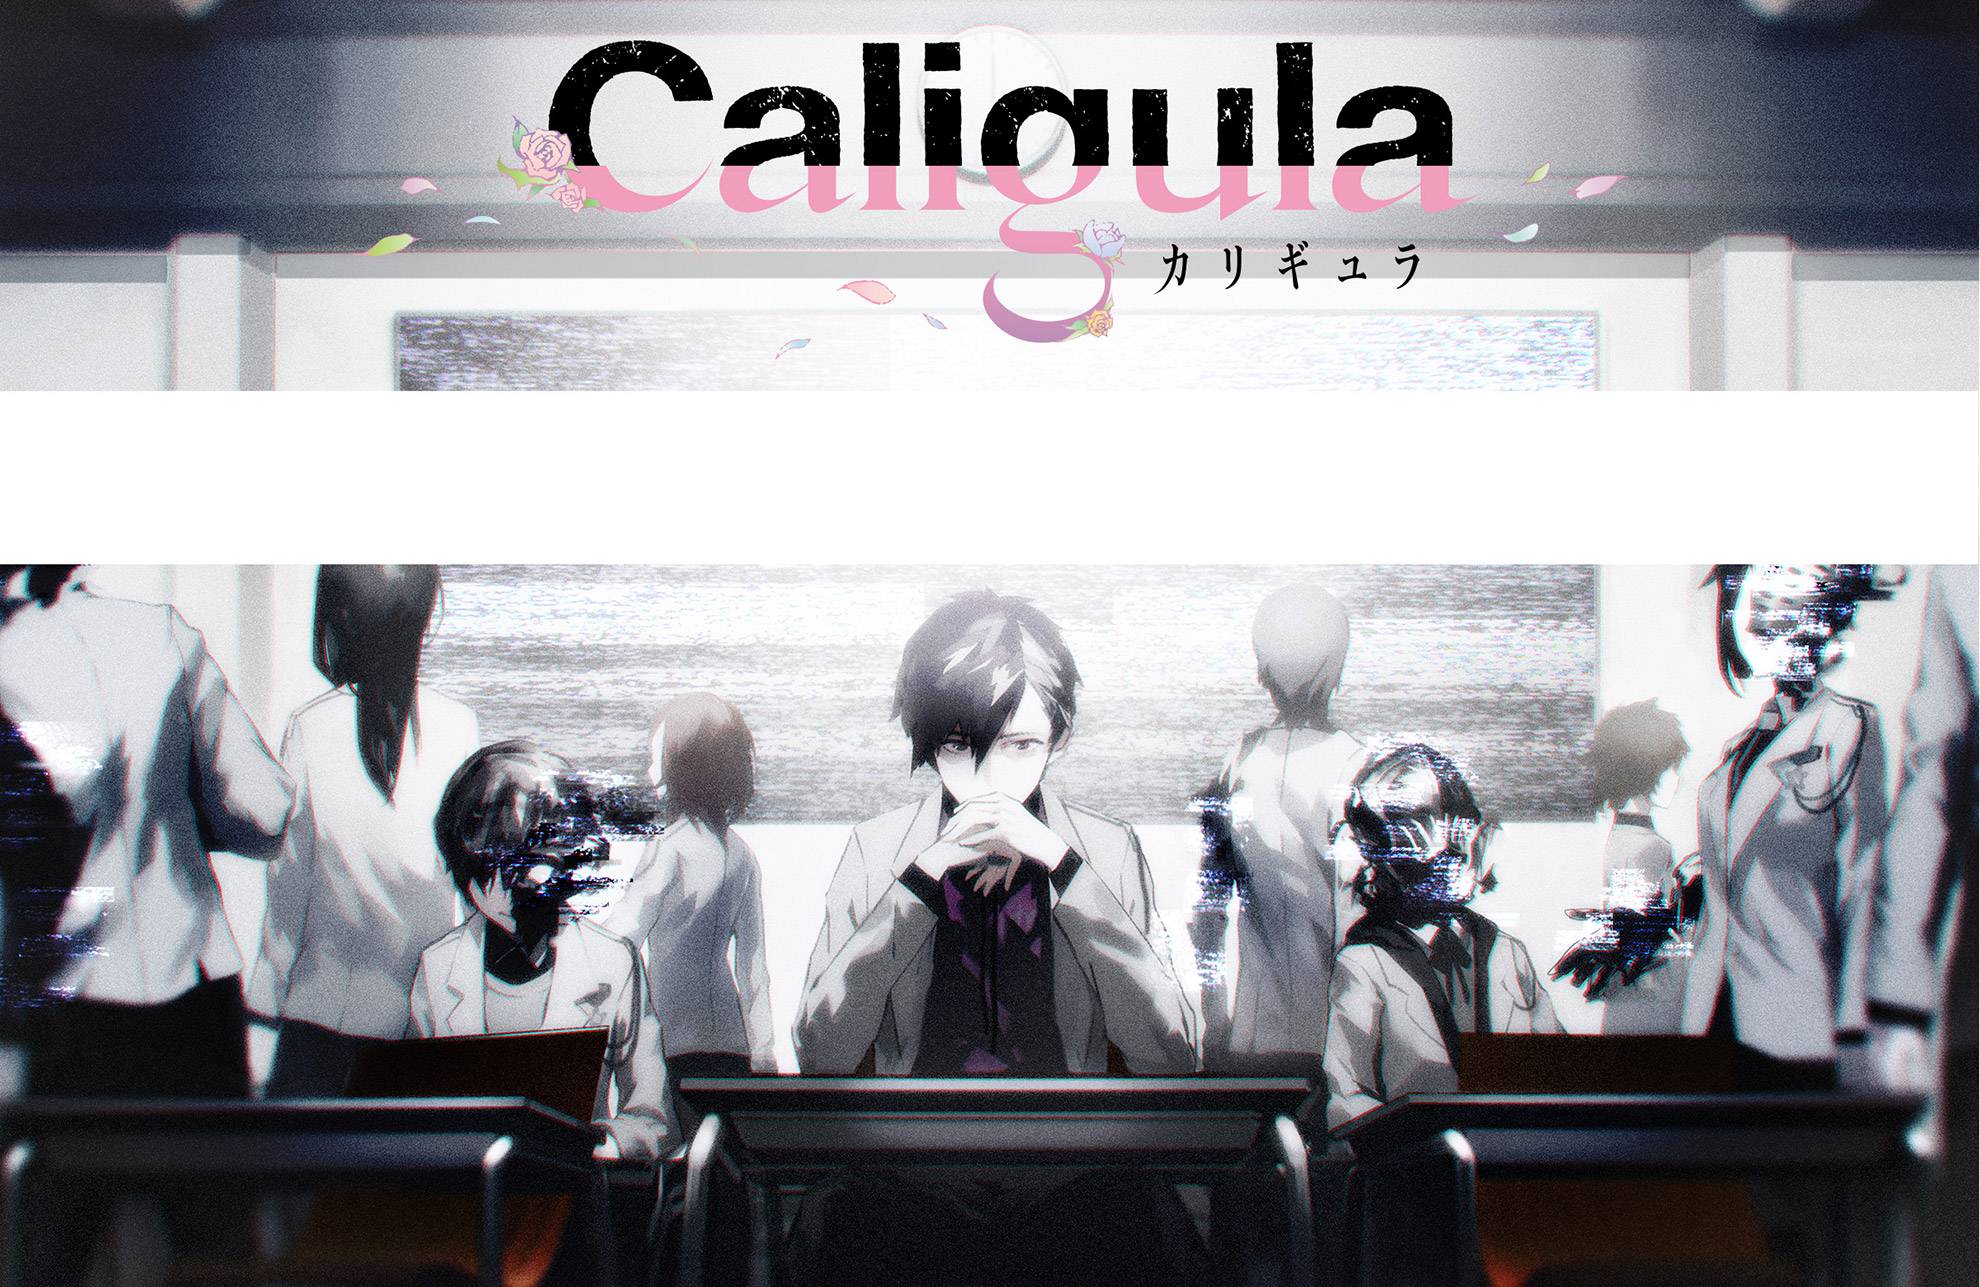 Caligula è il nuovo jrpg per PS Vita dell’autore di Persona 1 e 2